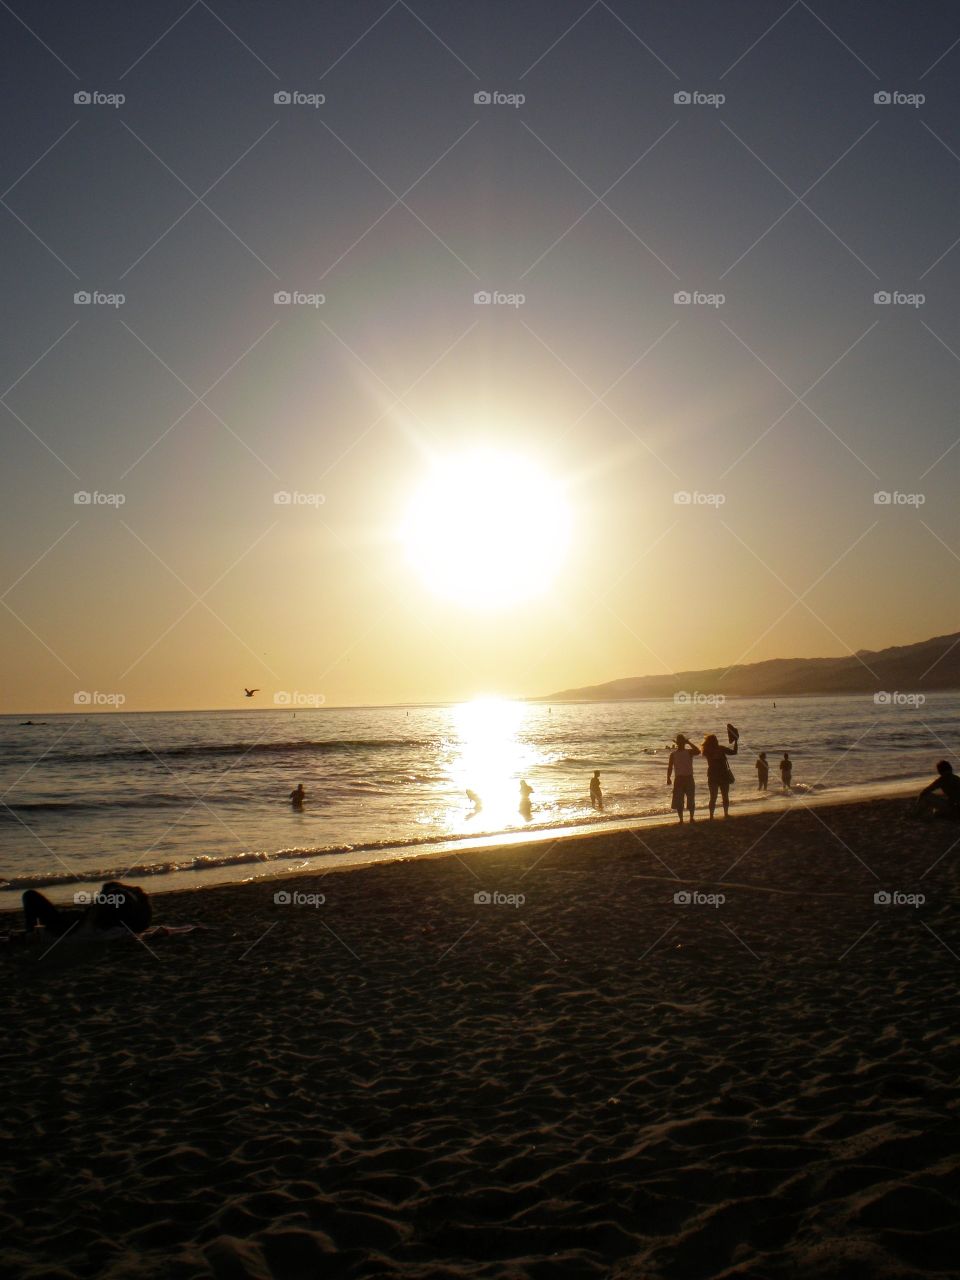 Sunset on California beach